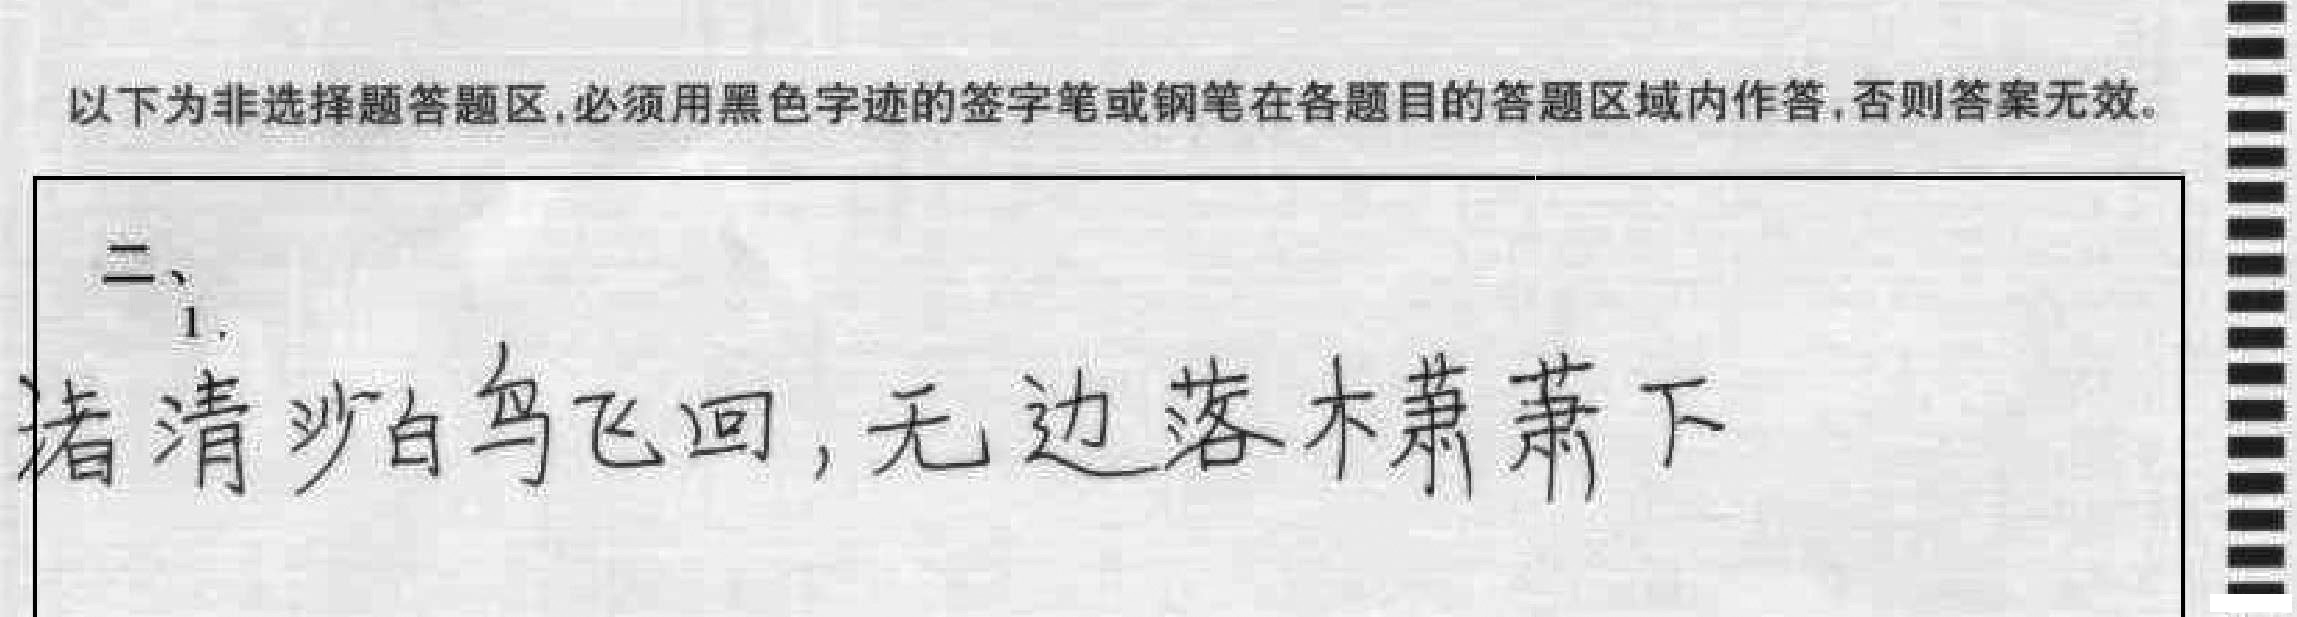 【中考须知】2014广州中考答题卡填涂及答题的正确方法2